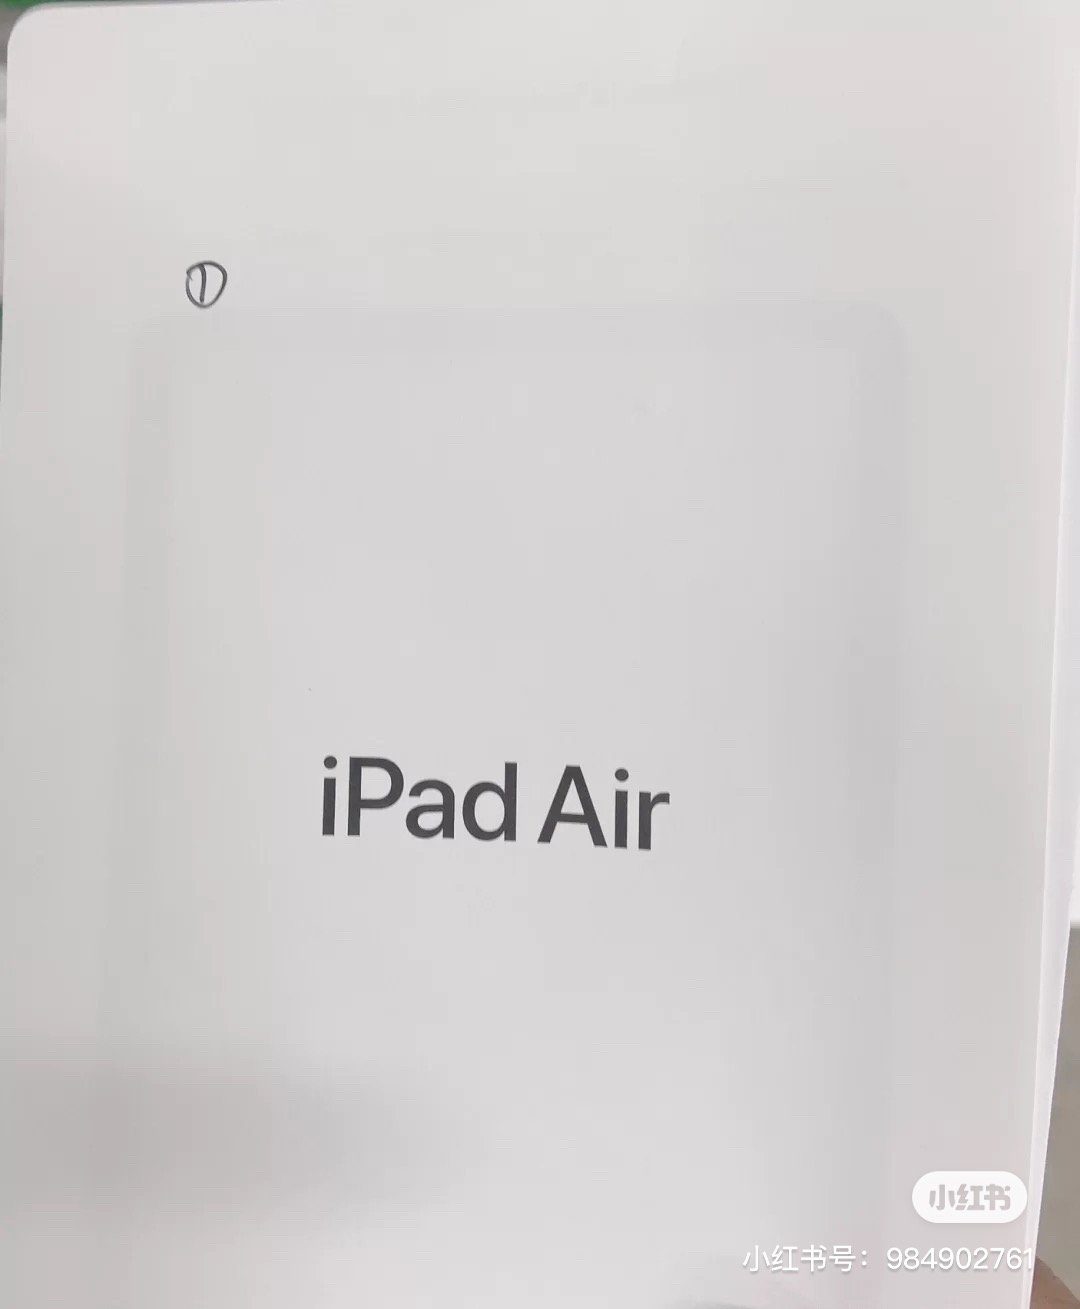 Tài liệu về iPad Air 4 xuất hiện, cho thấy màn hình viền mỏng với Touch ID và cổng USB-C